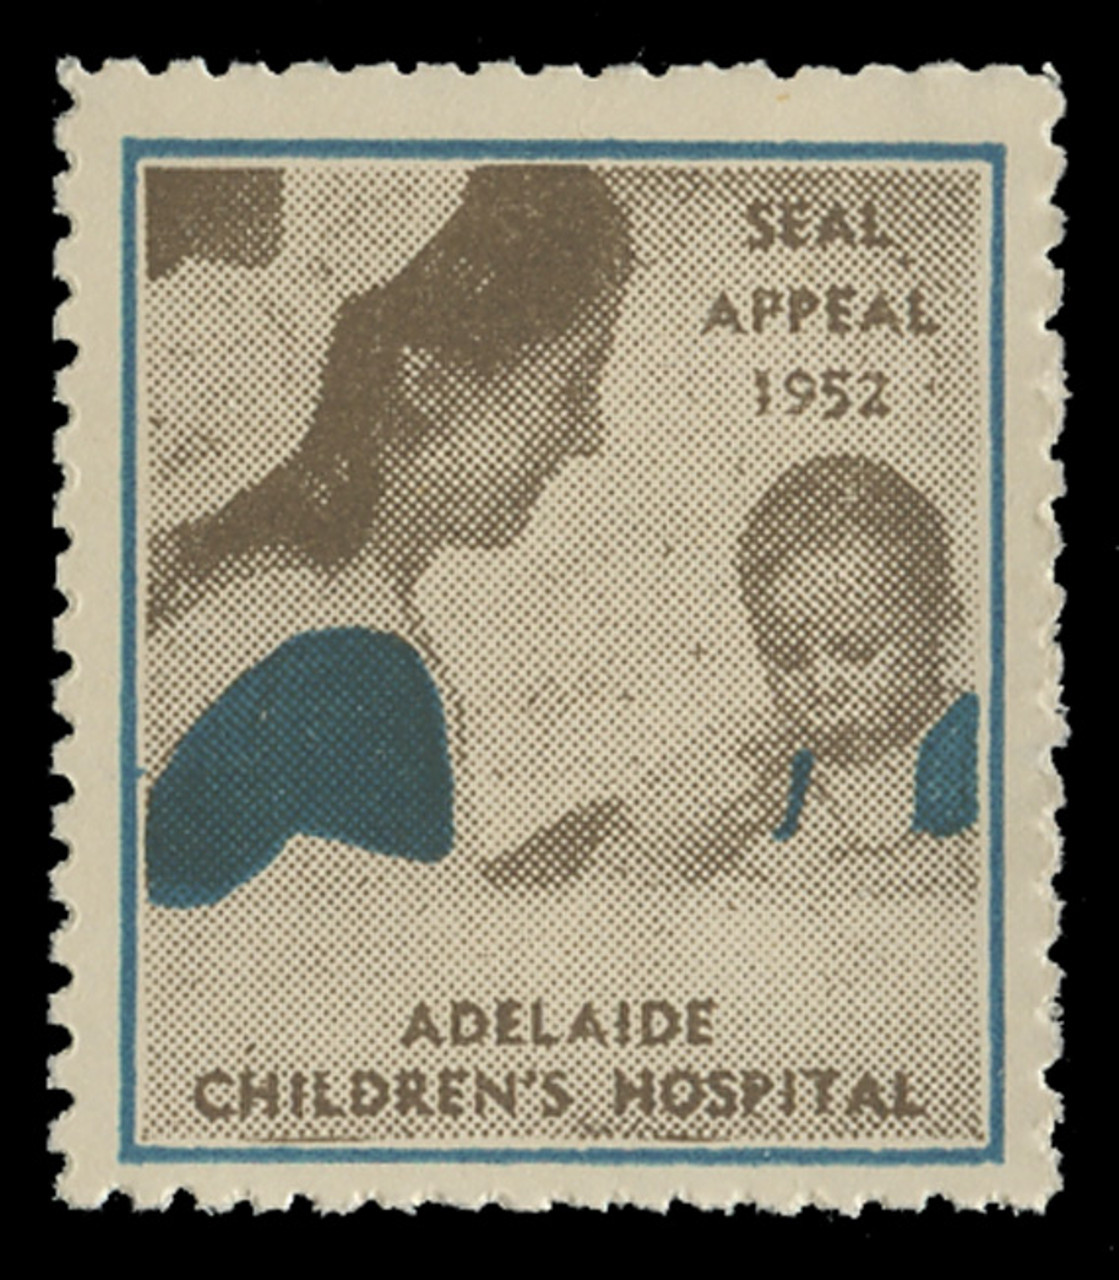 AUSTRALIA - 1952-SA - Adelaide Children's Hospital - Seal Appeal